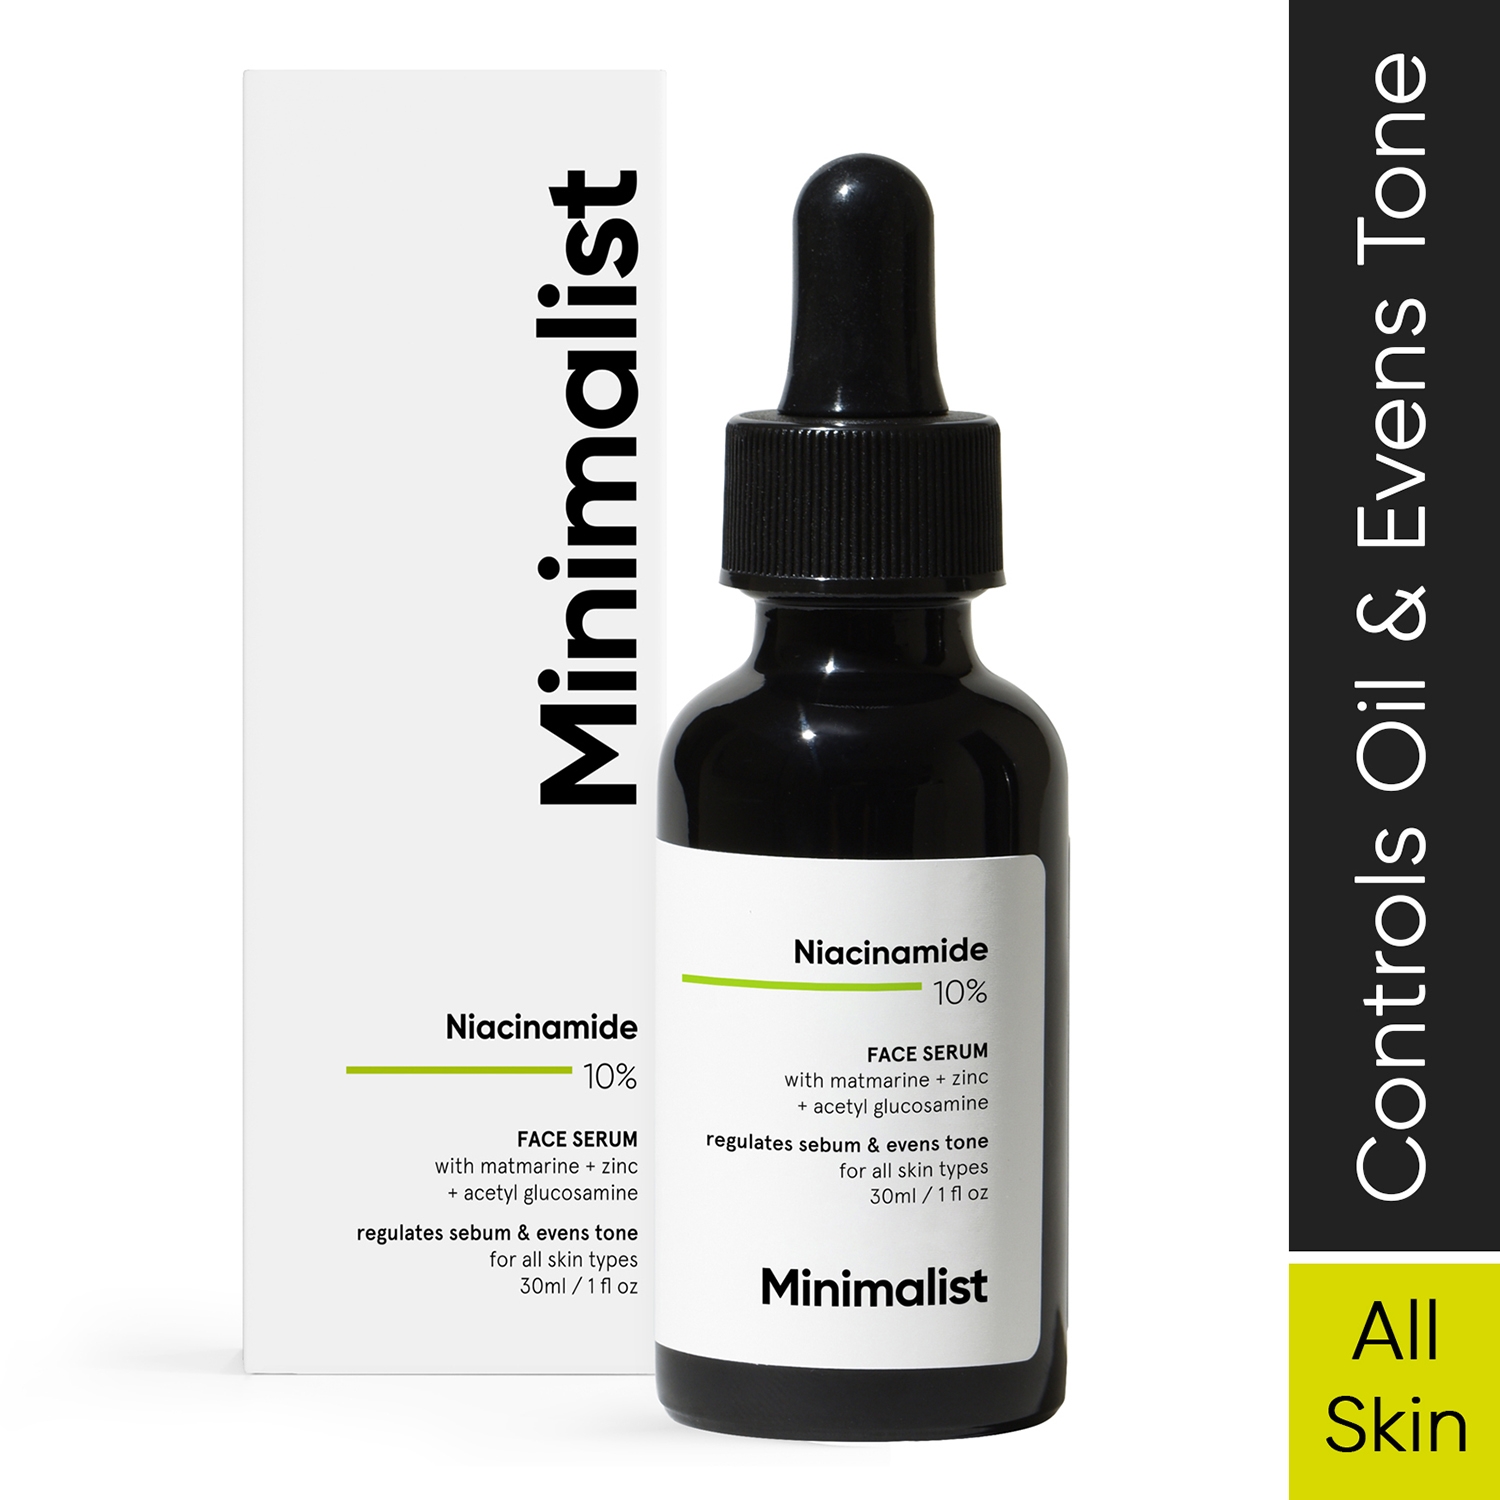 Minimalist | Minimalist 10% Niacinamide Face Serum Reduces Blemishes & Oil - (30ml)